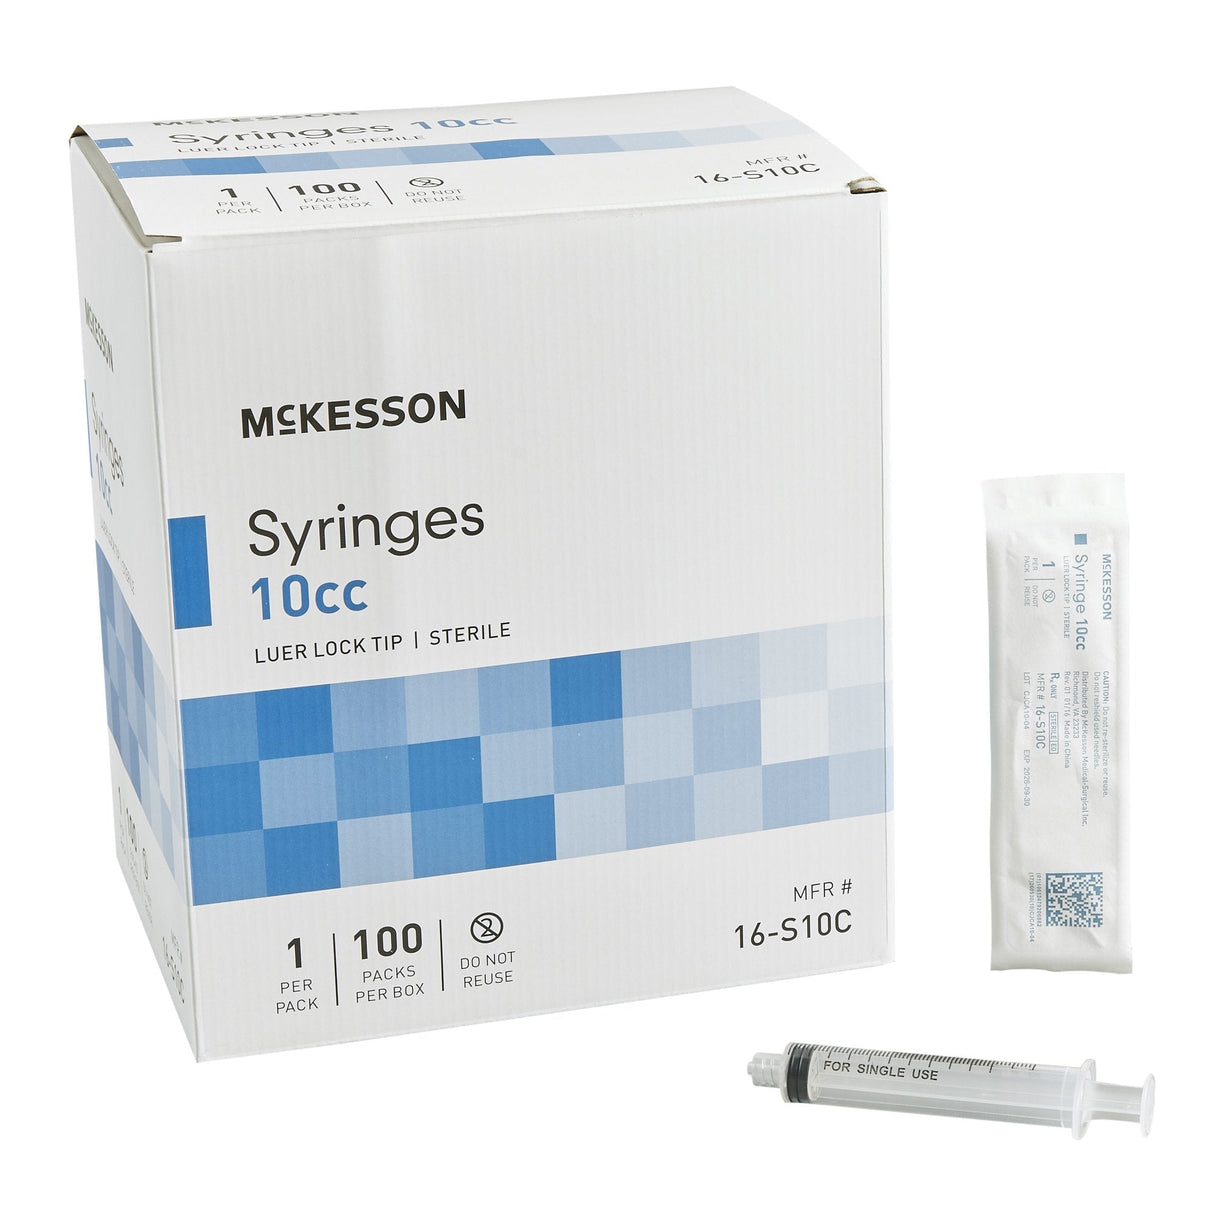 McKesson Luer Lock Syringe 10cc Sterile - 16-S10C